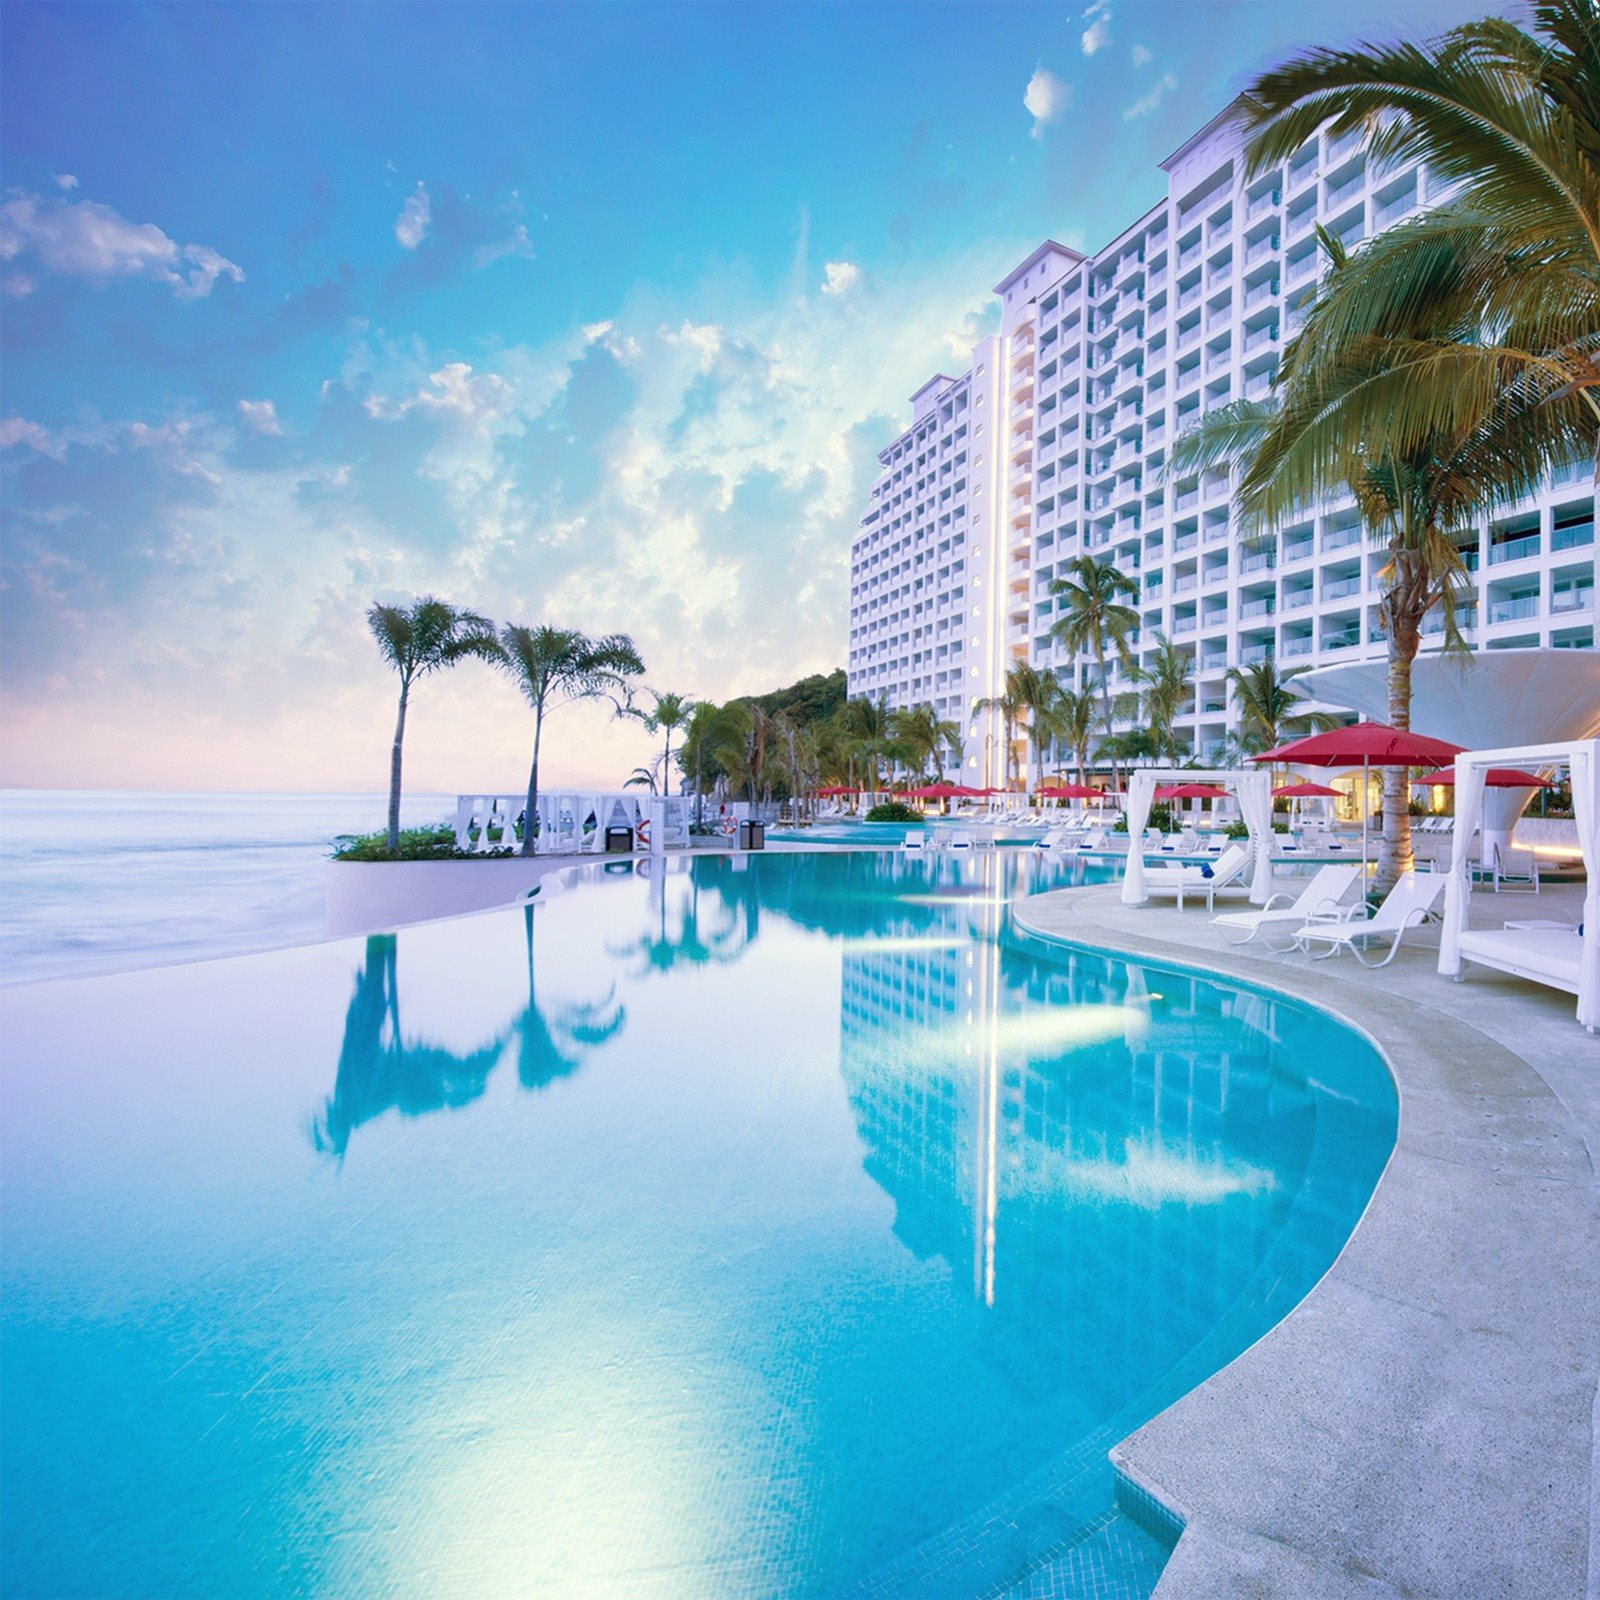 Hilton abre nuevo resort todo incluido en México